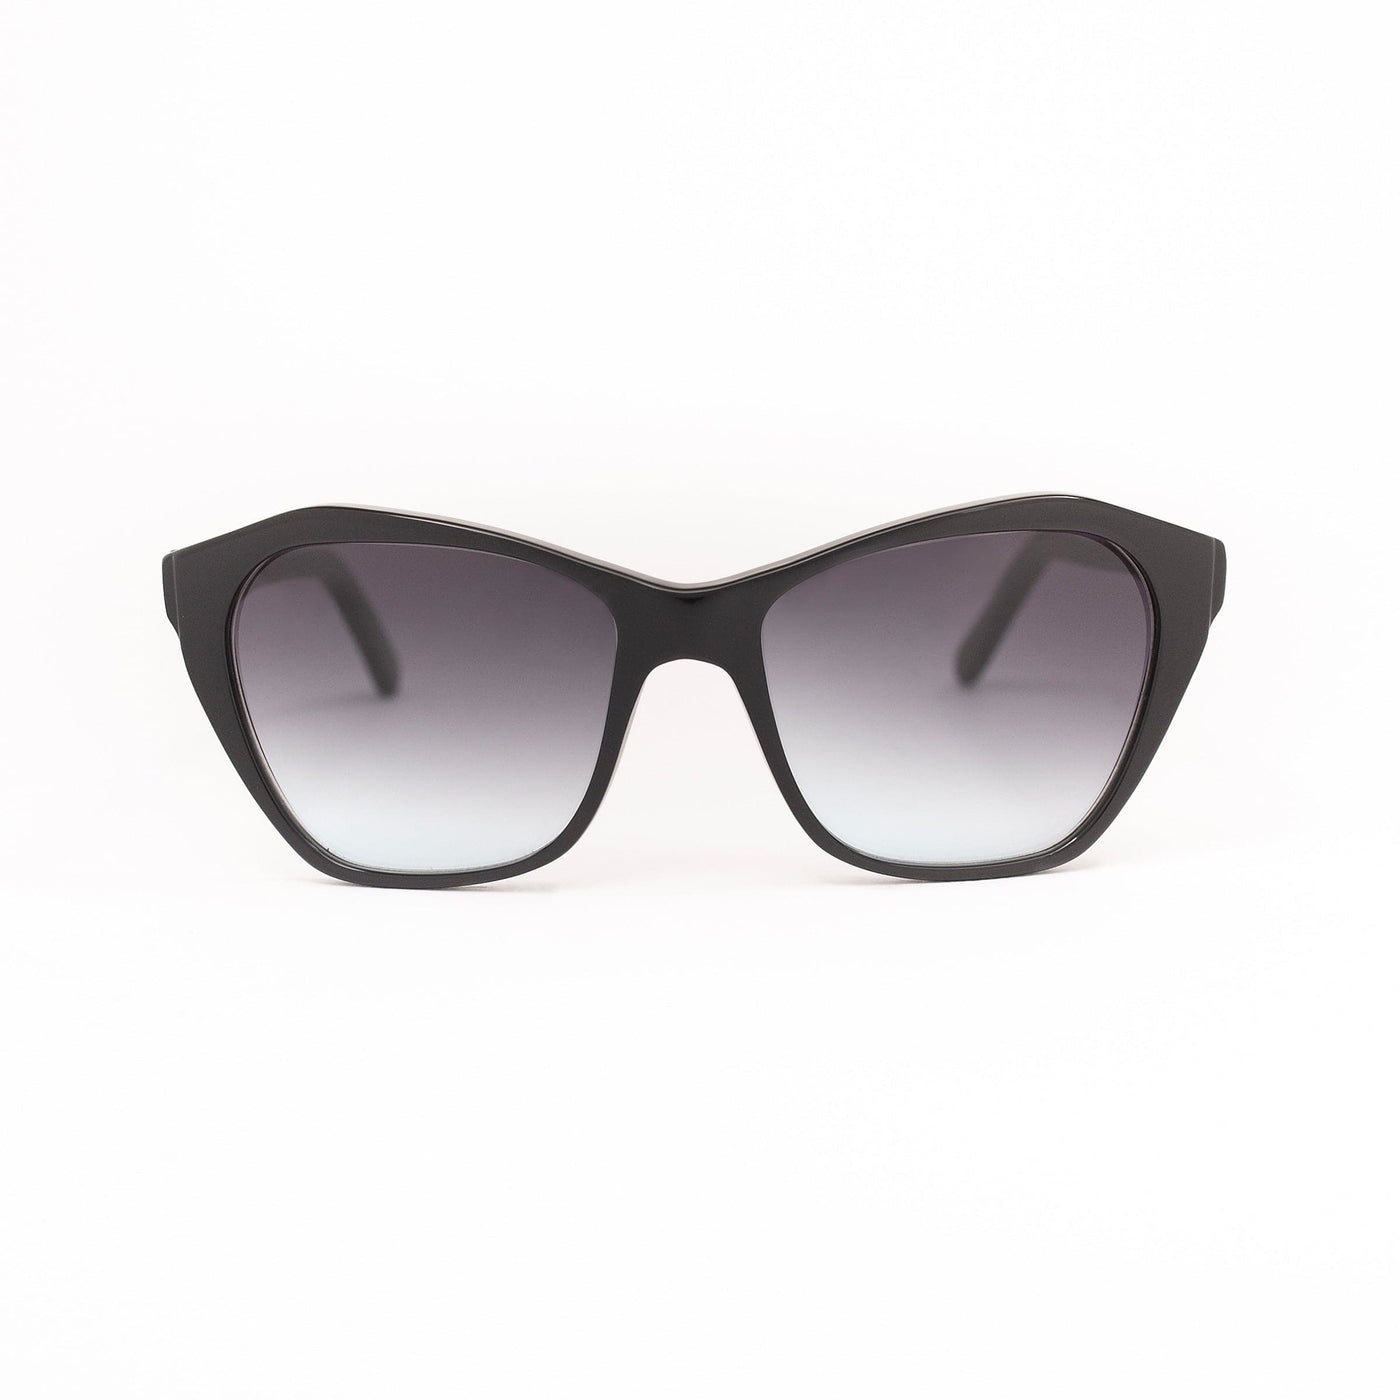 Sunglasses OA V 01